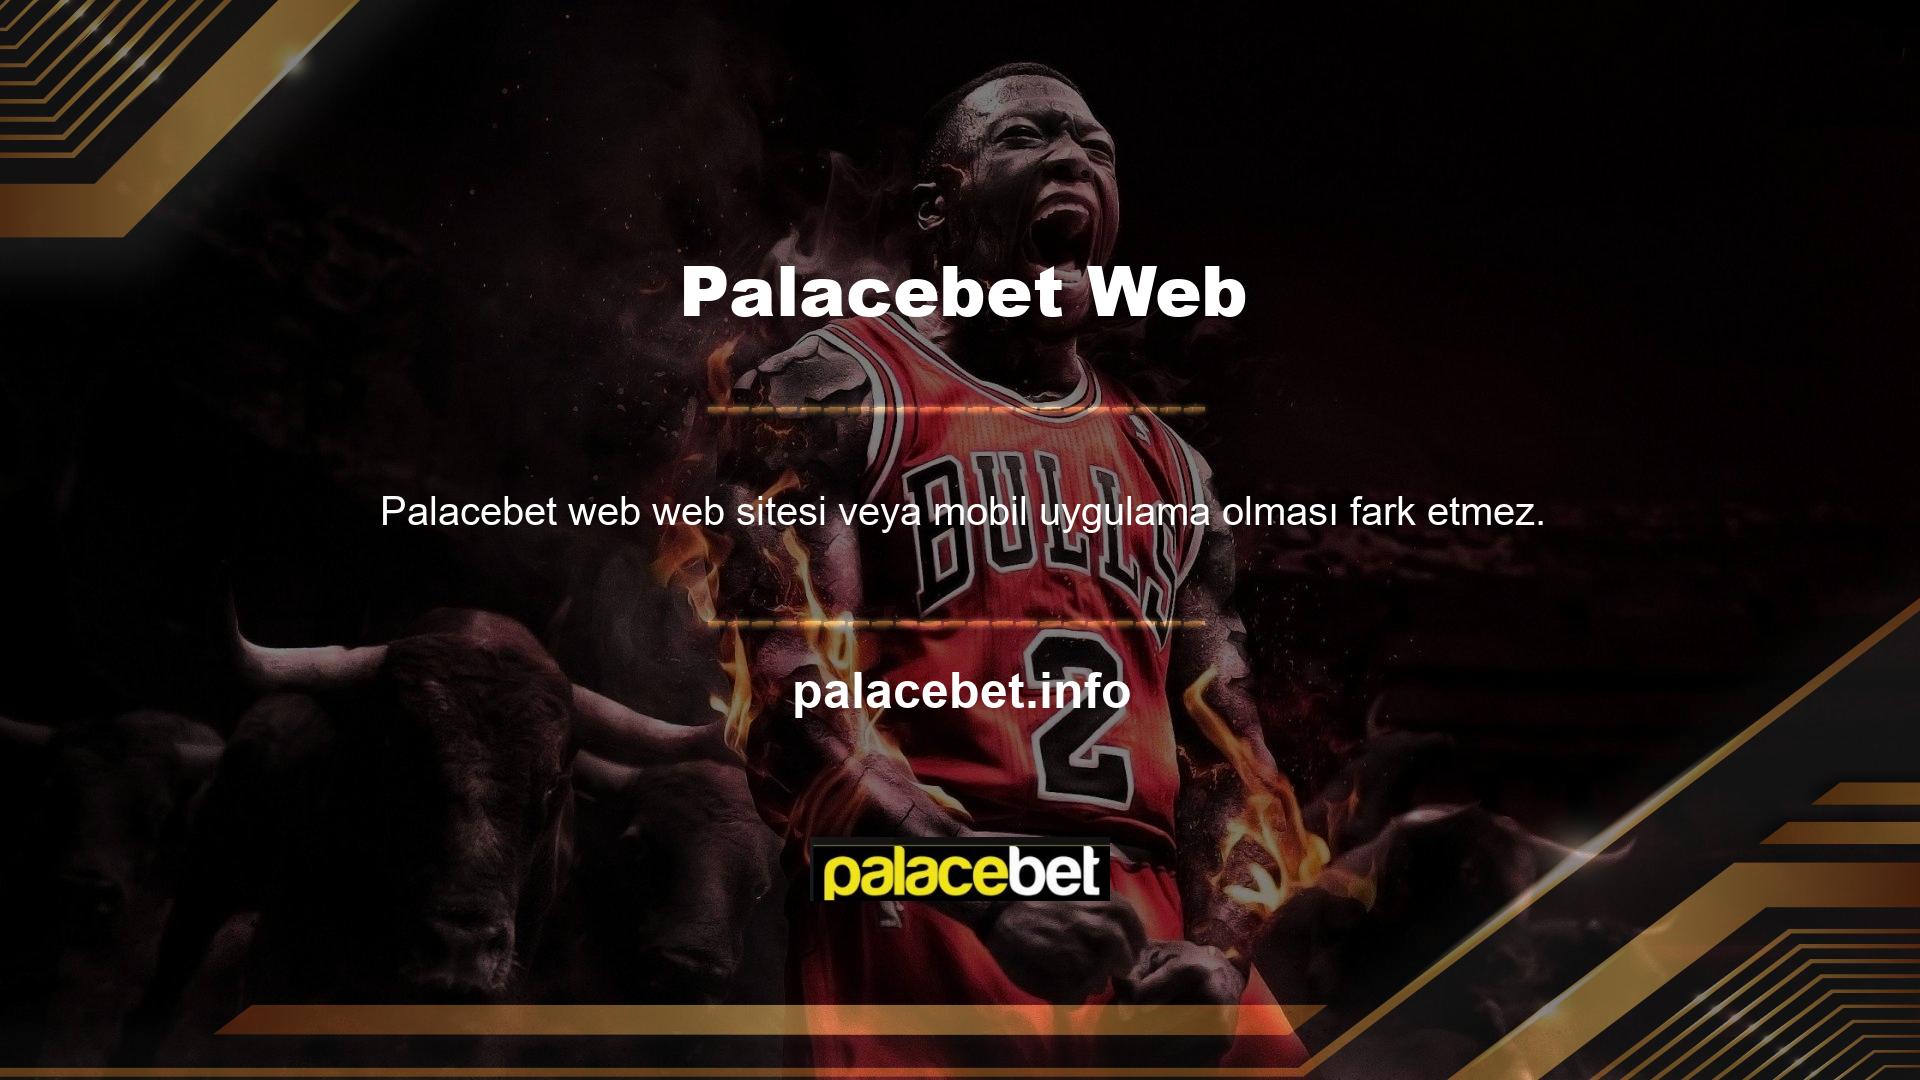 Palacebet, uygulamalarını başarılı bir şekilde çevrimiçi oyun web siteleri ve oyun sağlayıcılarının altyapısına taşıdı